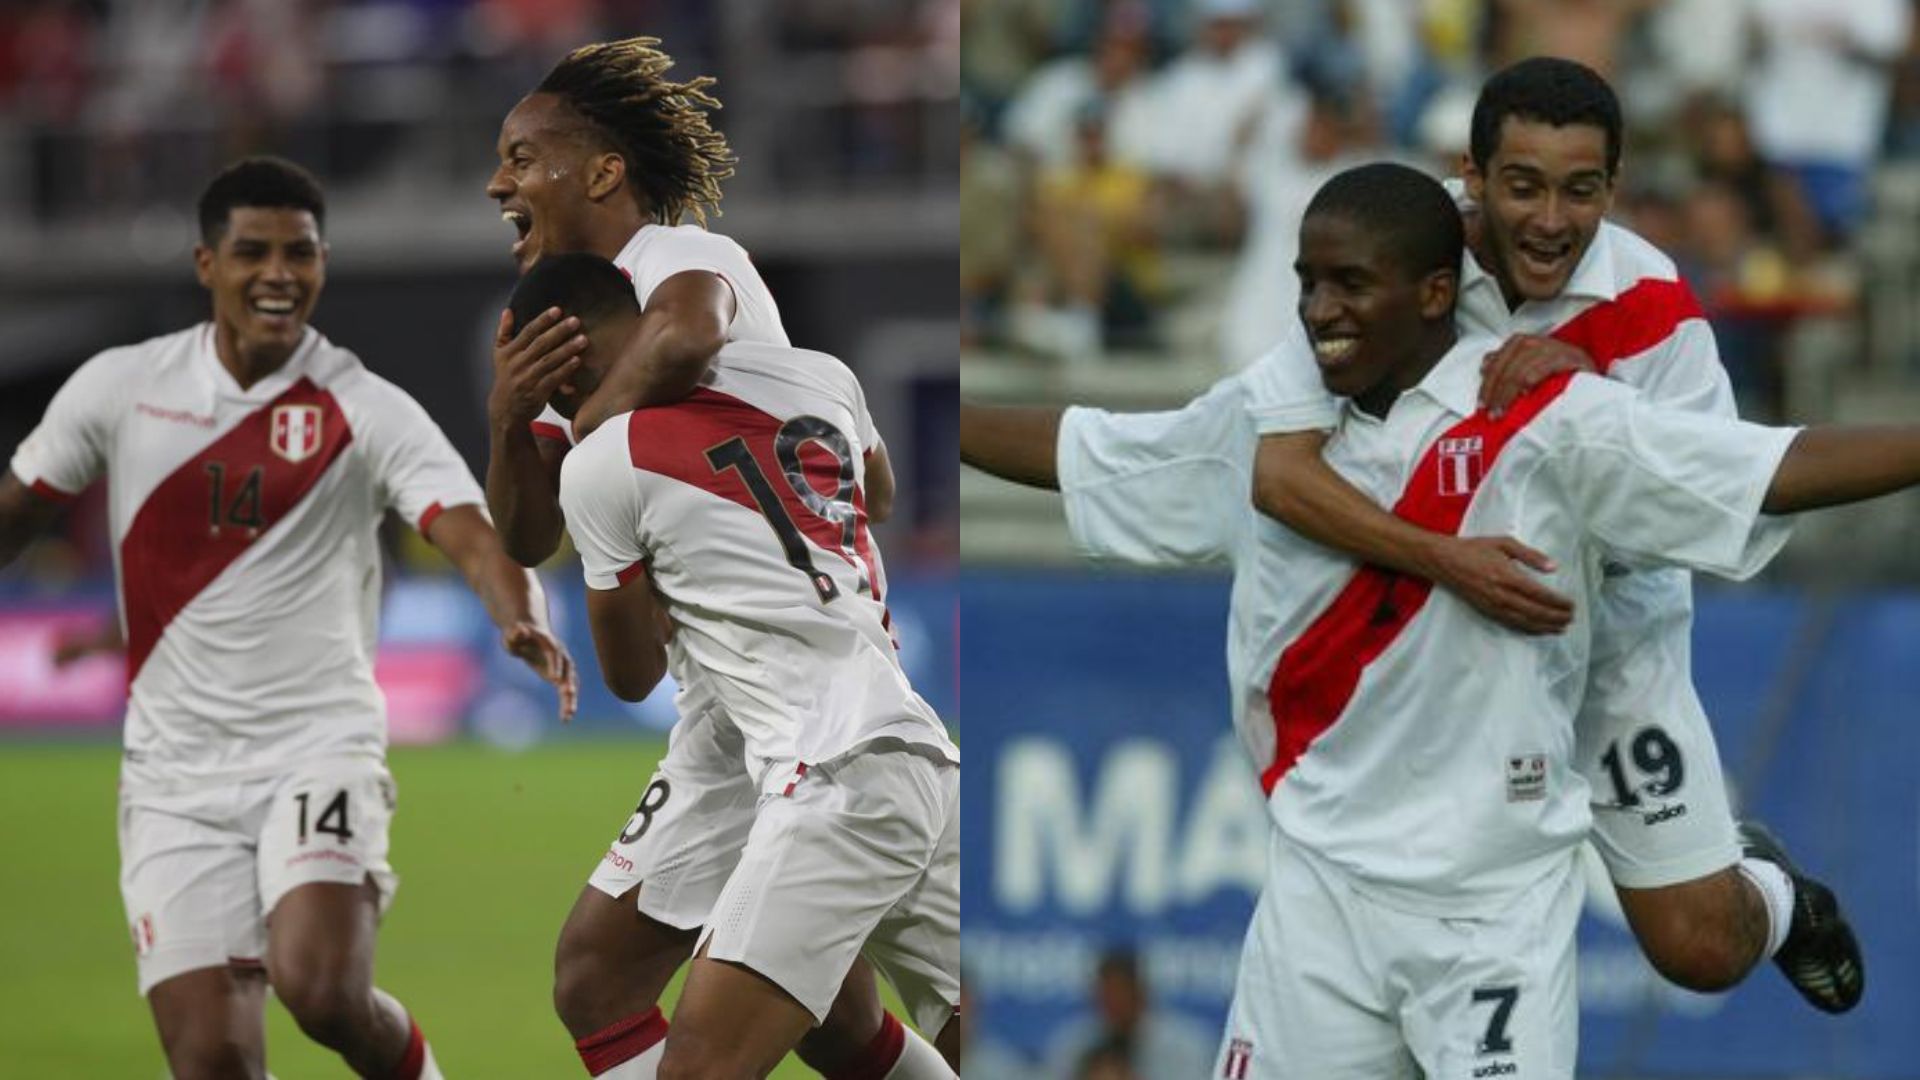 Con Bryan Reyna y Jefferson Farfán: la lista de jugadores que debutaron con gol en la selección peruana